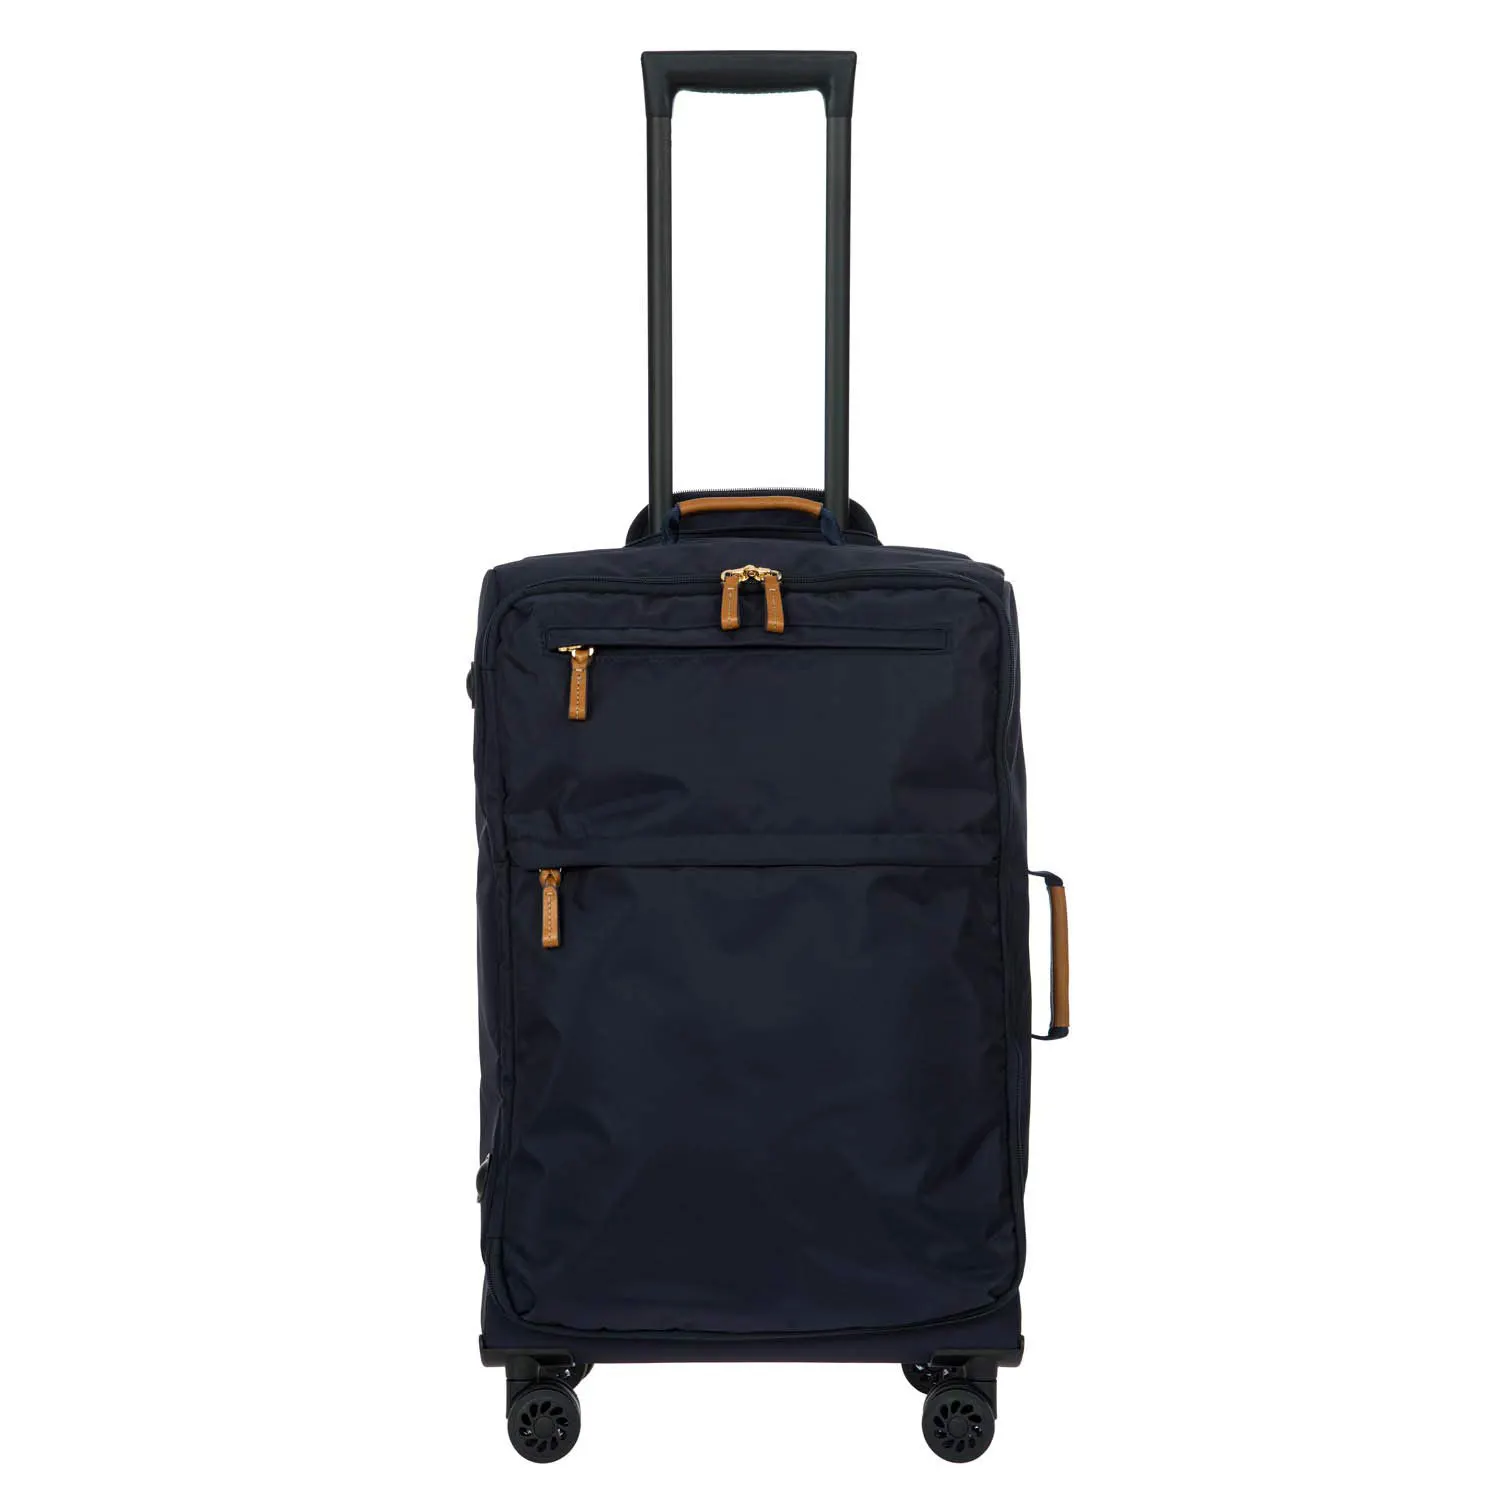 Oytb-2412 venda quente mala designer bagagem fornecedor bagagem marcas famosas outras malas e sacos de viagem